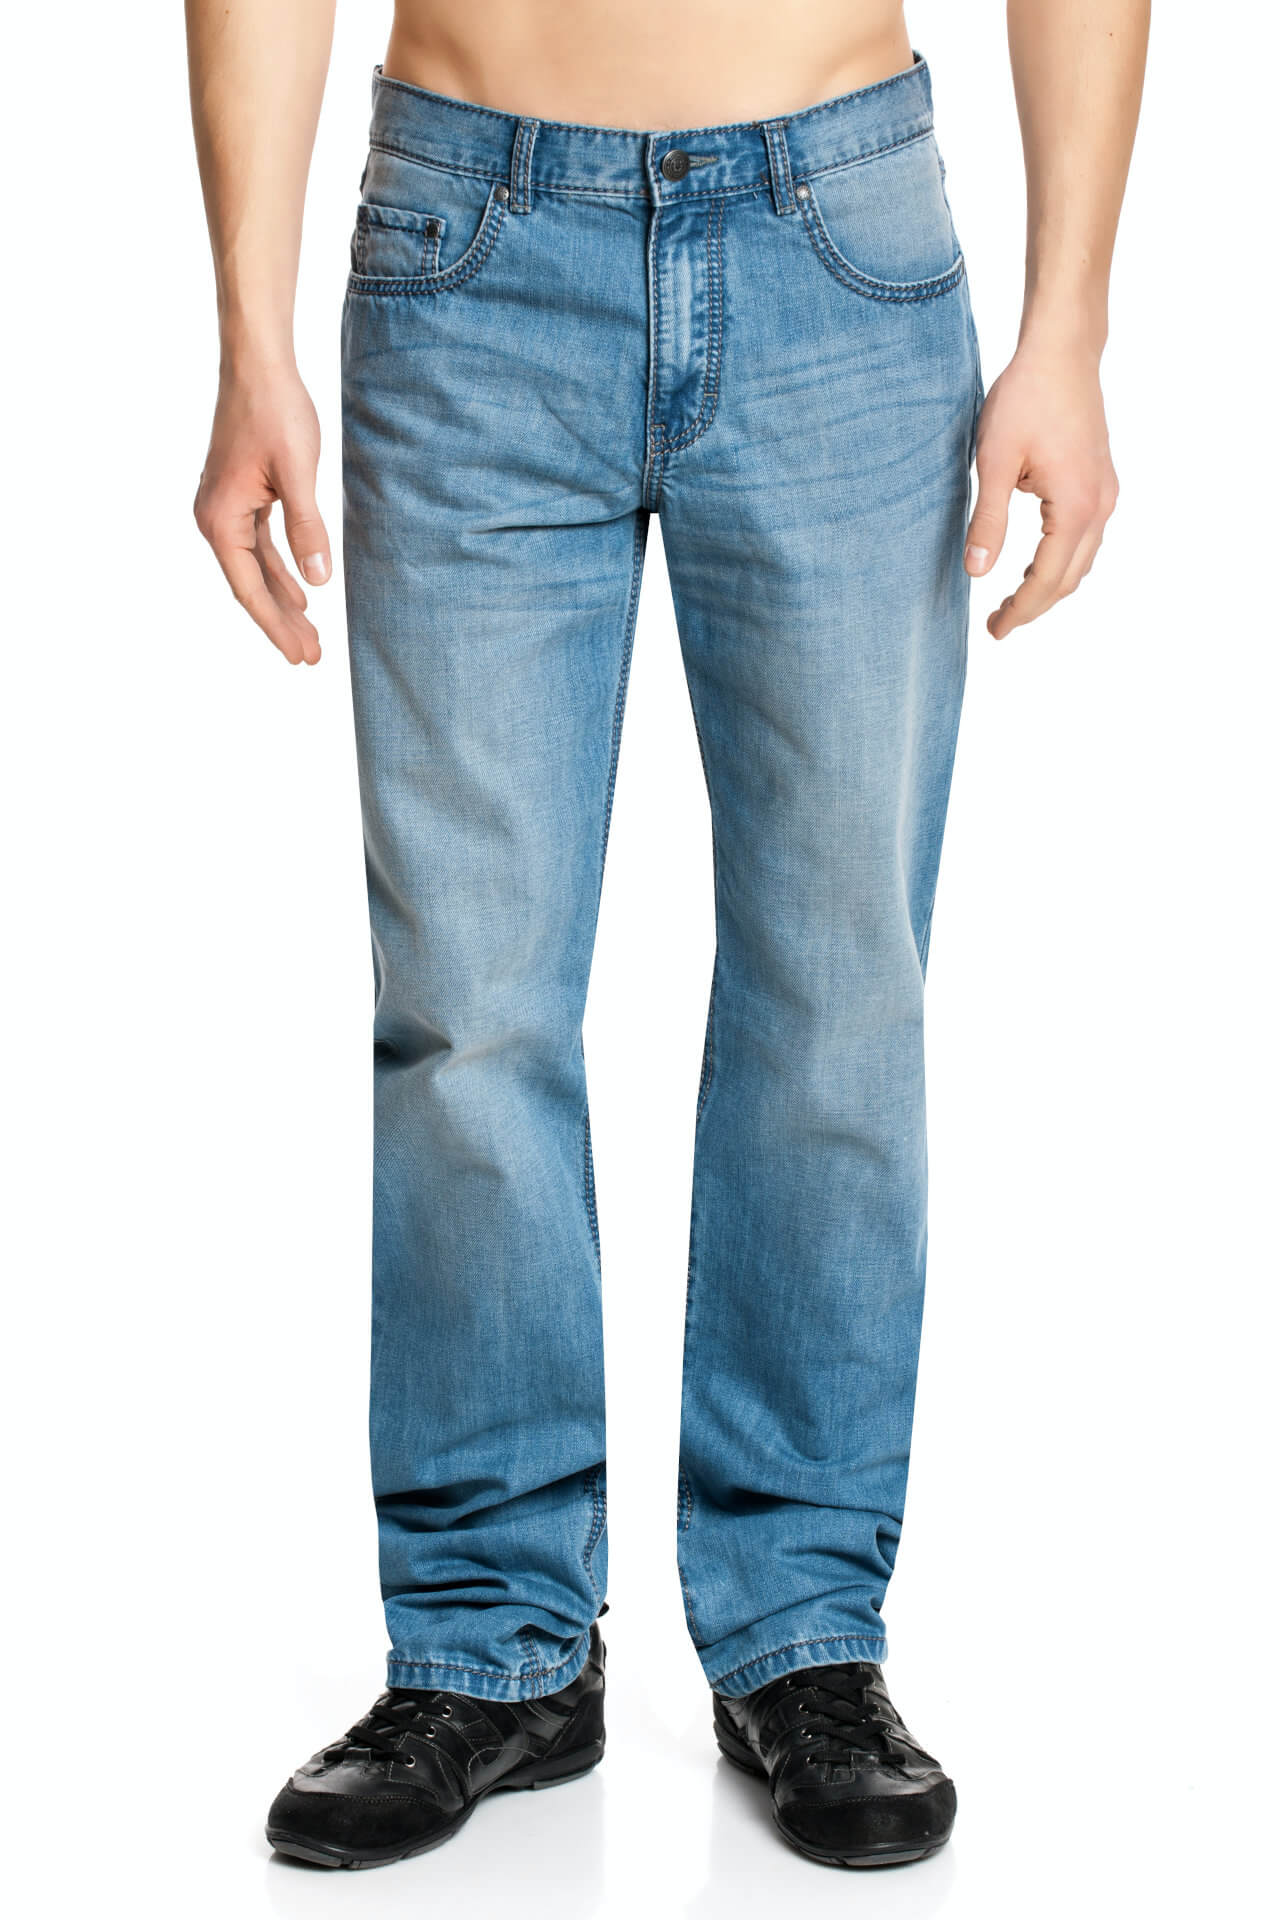 Paddock's Carter Jeans in Überlänge